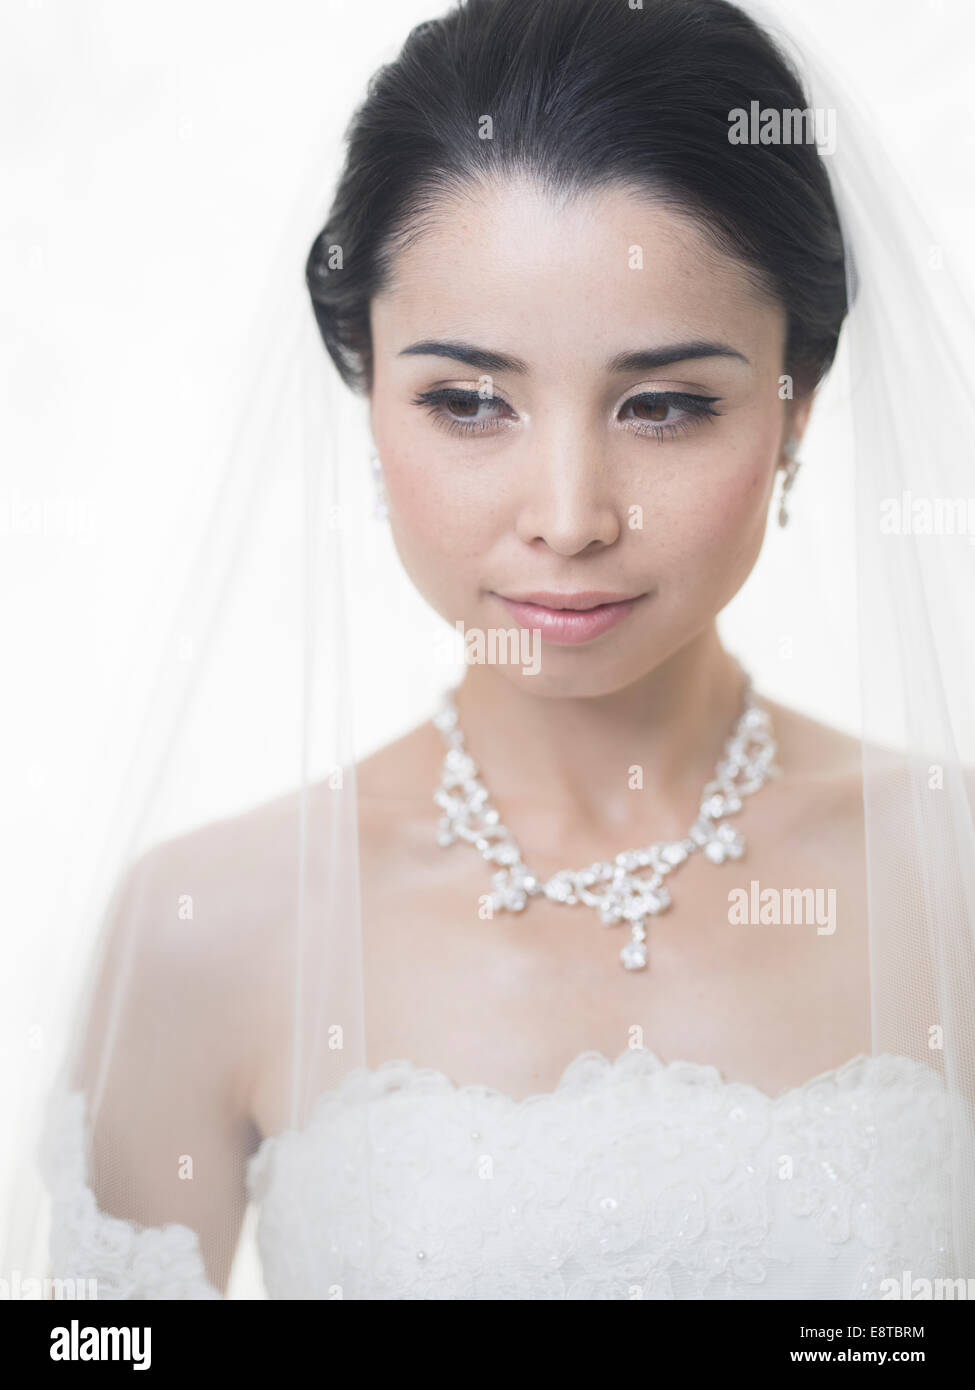 Mixed Race, asiatique / American mariée robe de mariage en blanc Banque D'Images